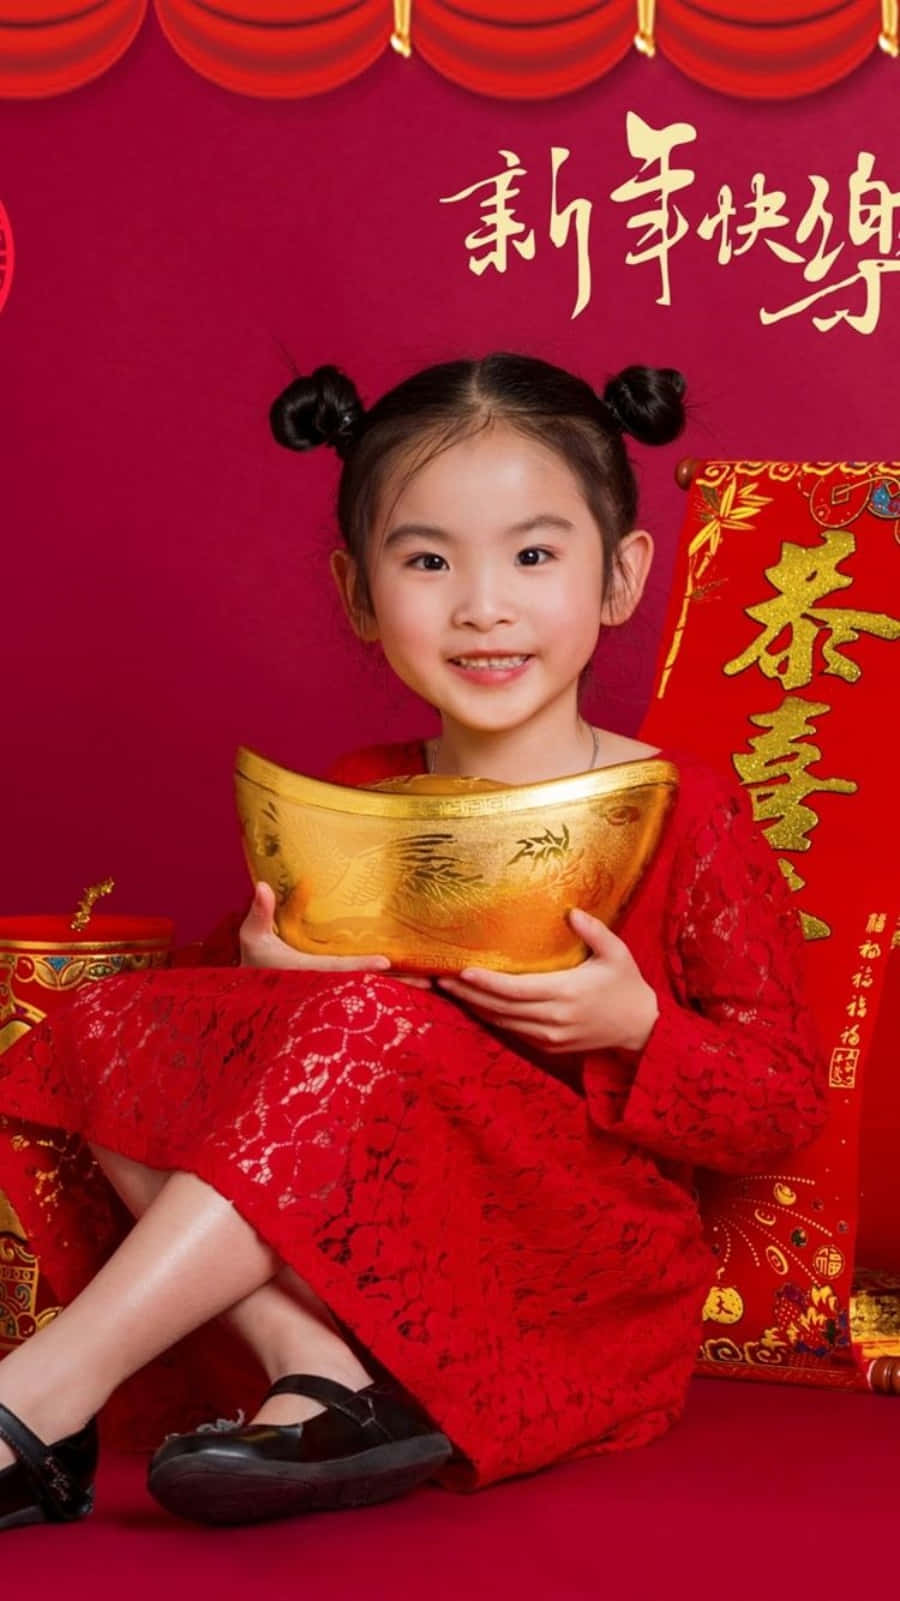 Läutensie Das Neue Jahr Mit Diesem Wunderschönen Chinesischen Neujahrsthema Für Ihren Iphone-hintergrund Ein. Wallpaper